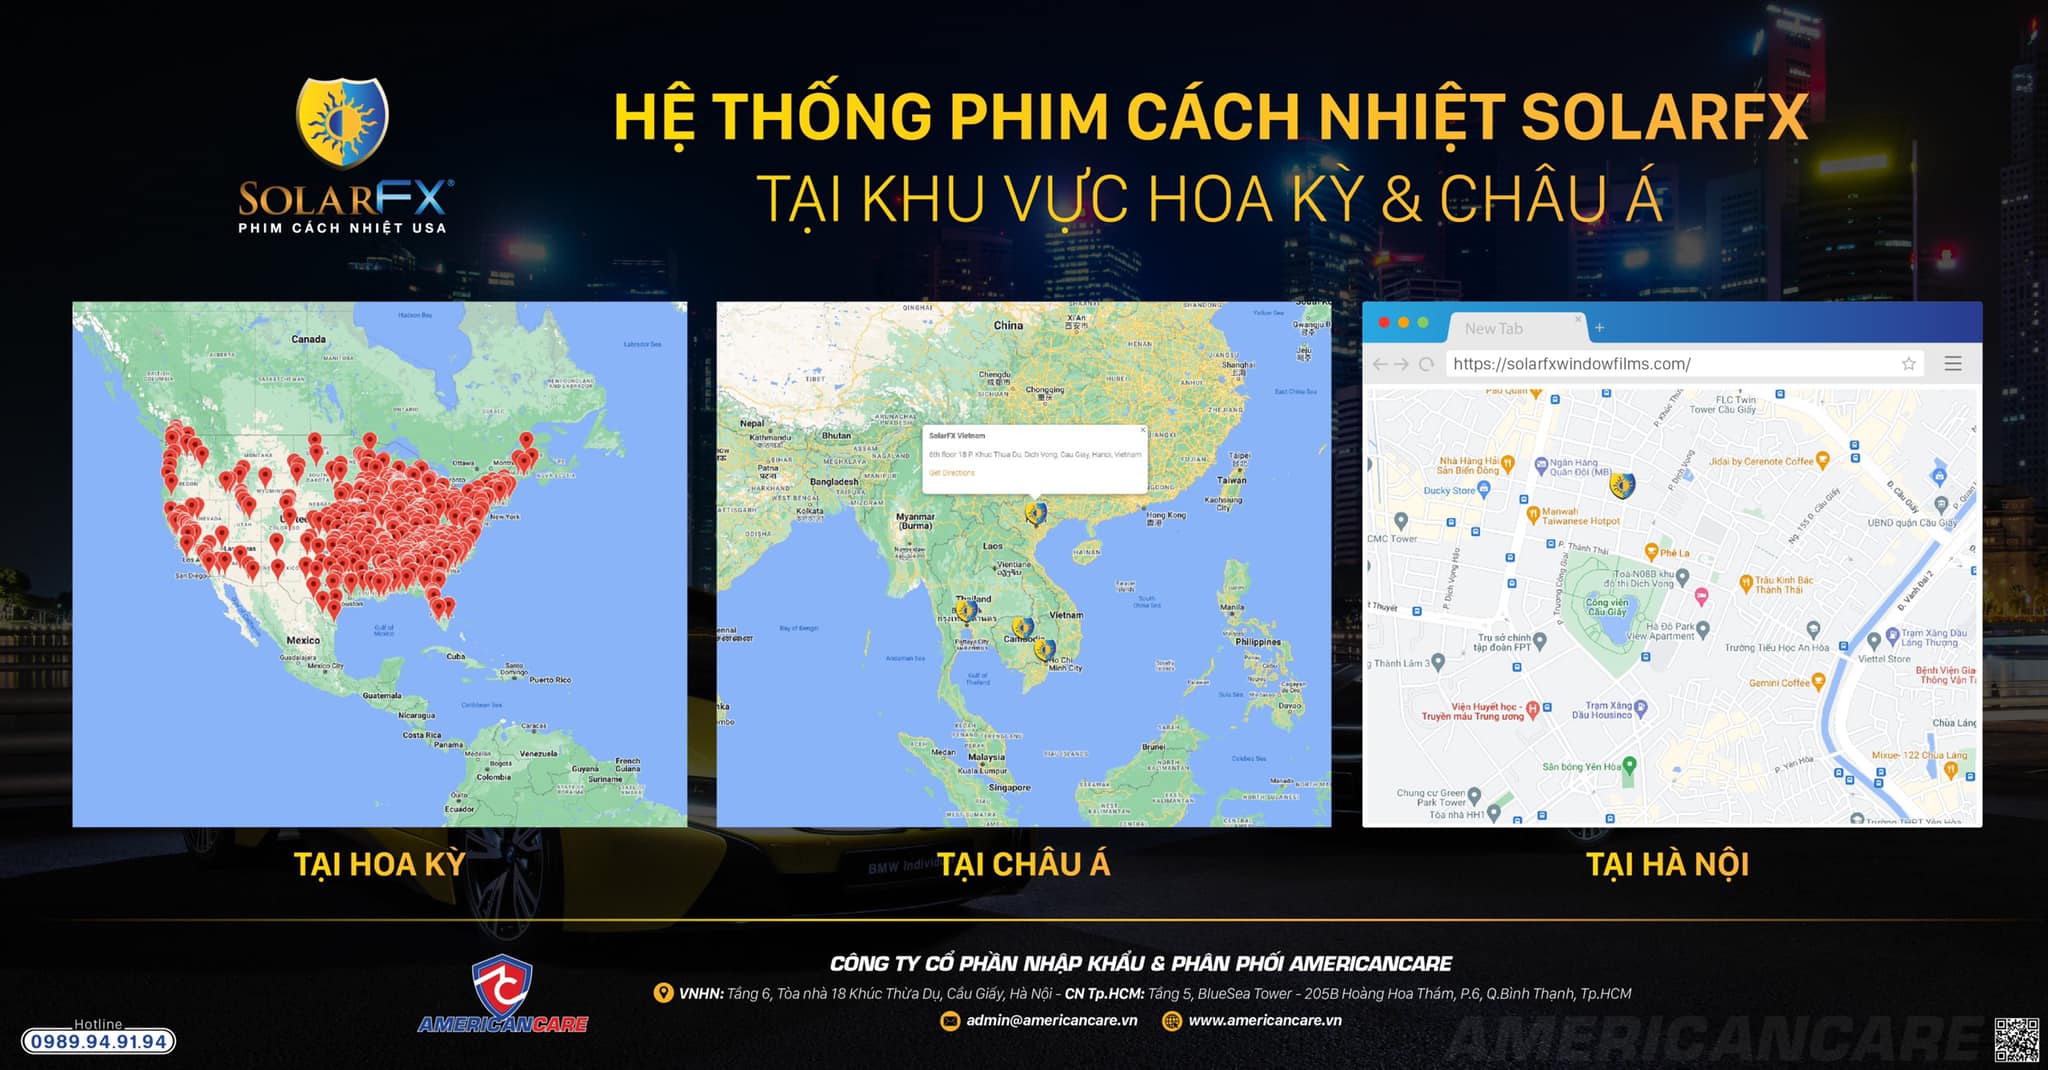 Việt Nam là một trong những quốc gia hiện được cập nhật trên bản đồ khu vực tại Mỹ của thương hiệu phim cách nhiệt SolarFX